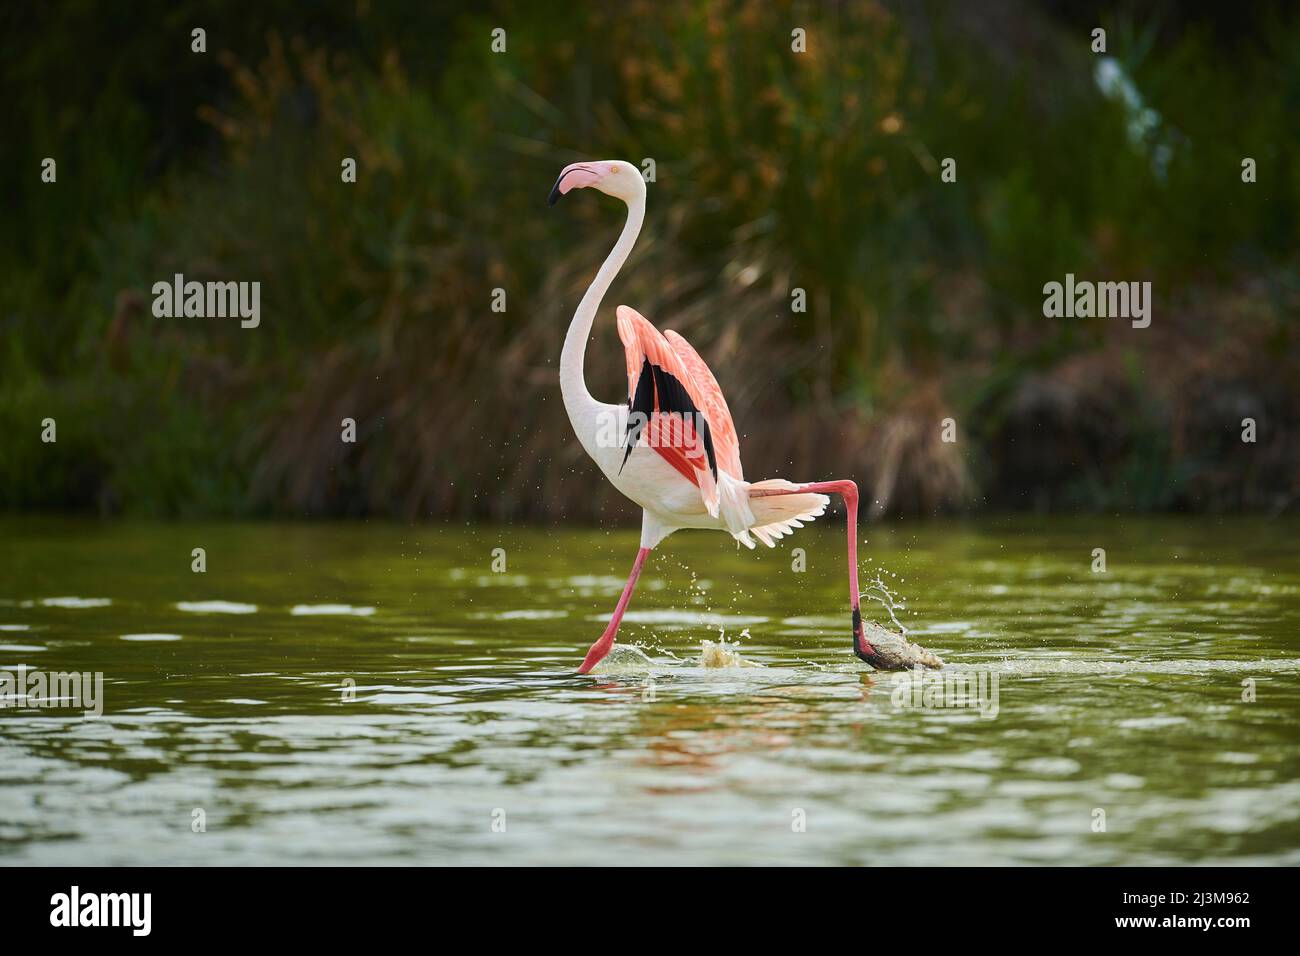 Großer Flamingo (Phoenicopterus roseus) läuft und hält seine großen Flügel im Wasser, Parc Naturel Regional de Camargue; Camargue, Frankreich Stockfoto